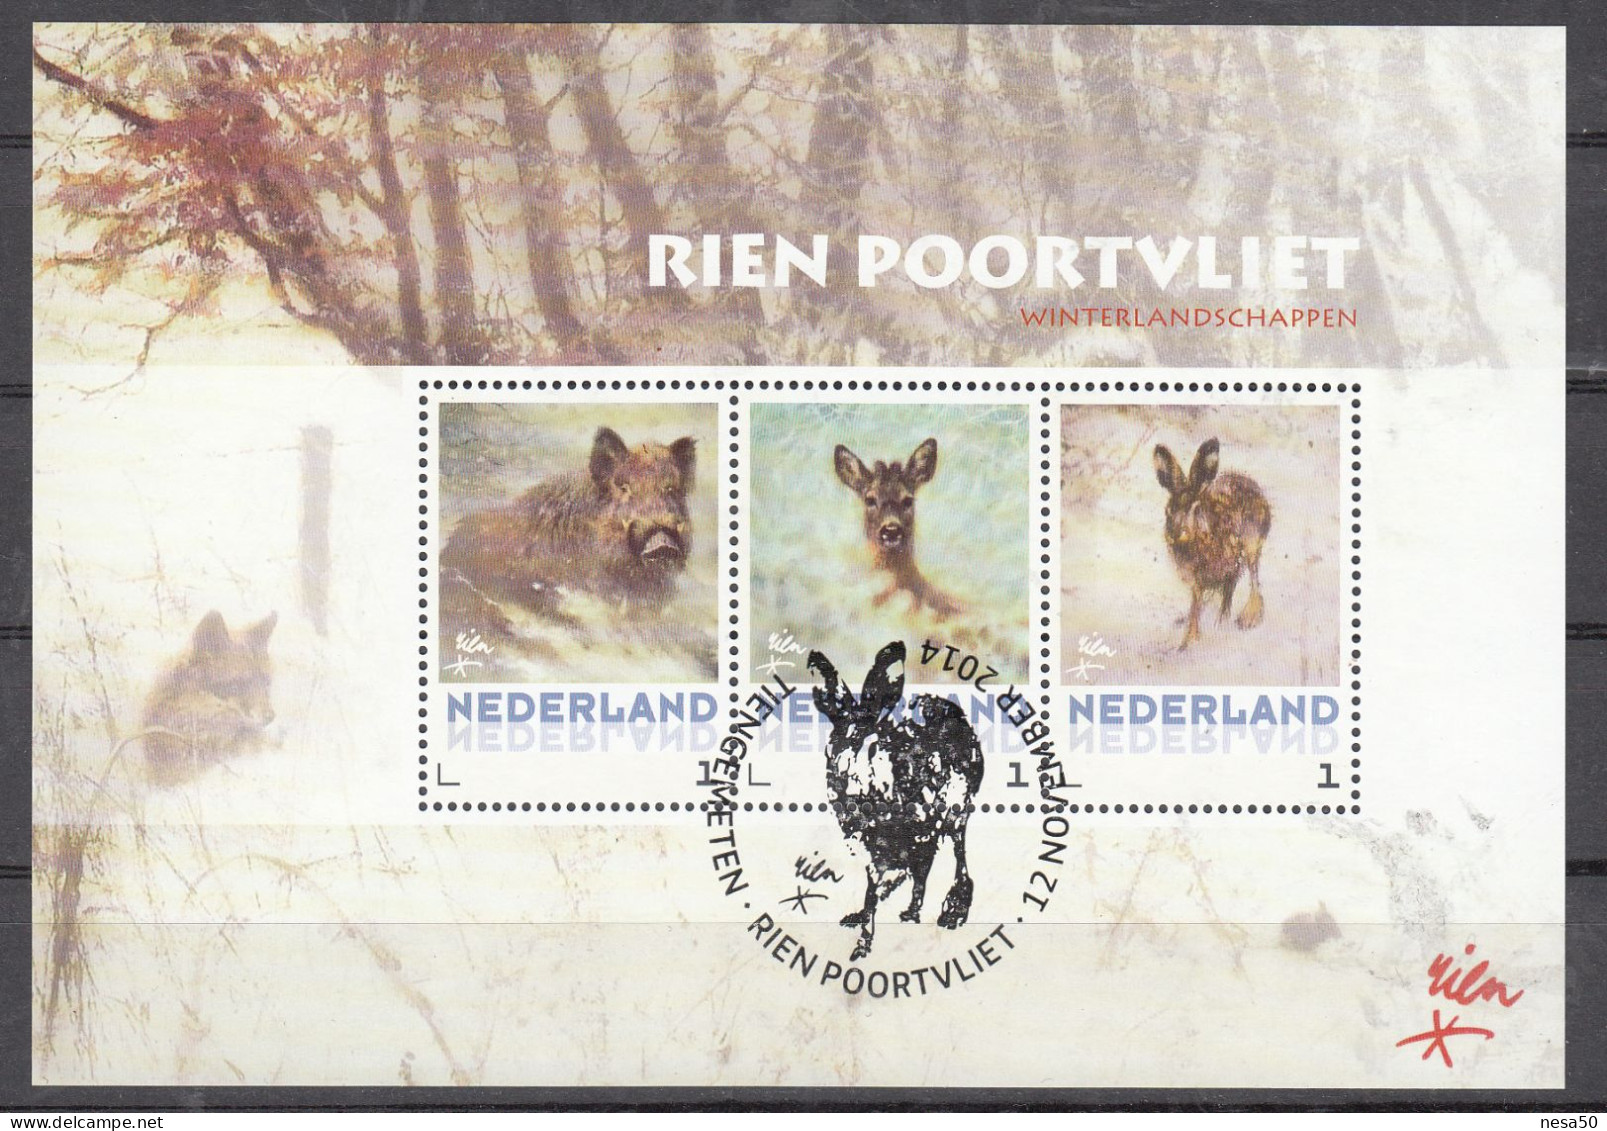 Nederland Persoonlijke Zegel, Rien Poortvliet, Wild Zwijn, Hert, Haas, Wild Boar, Deer, Hare, Speciale Stempel - Used Stamps